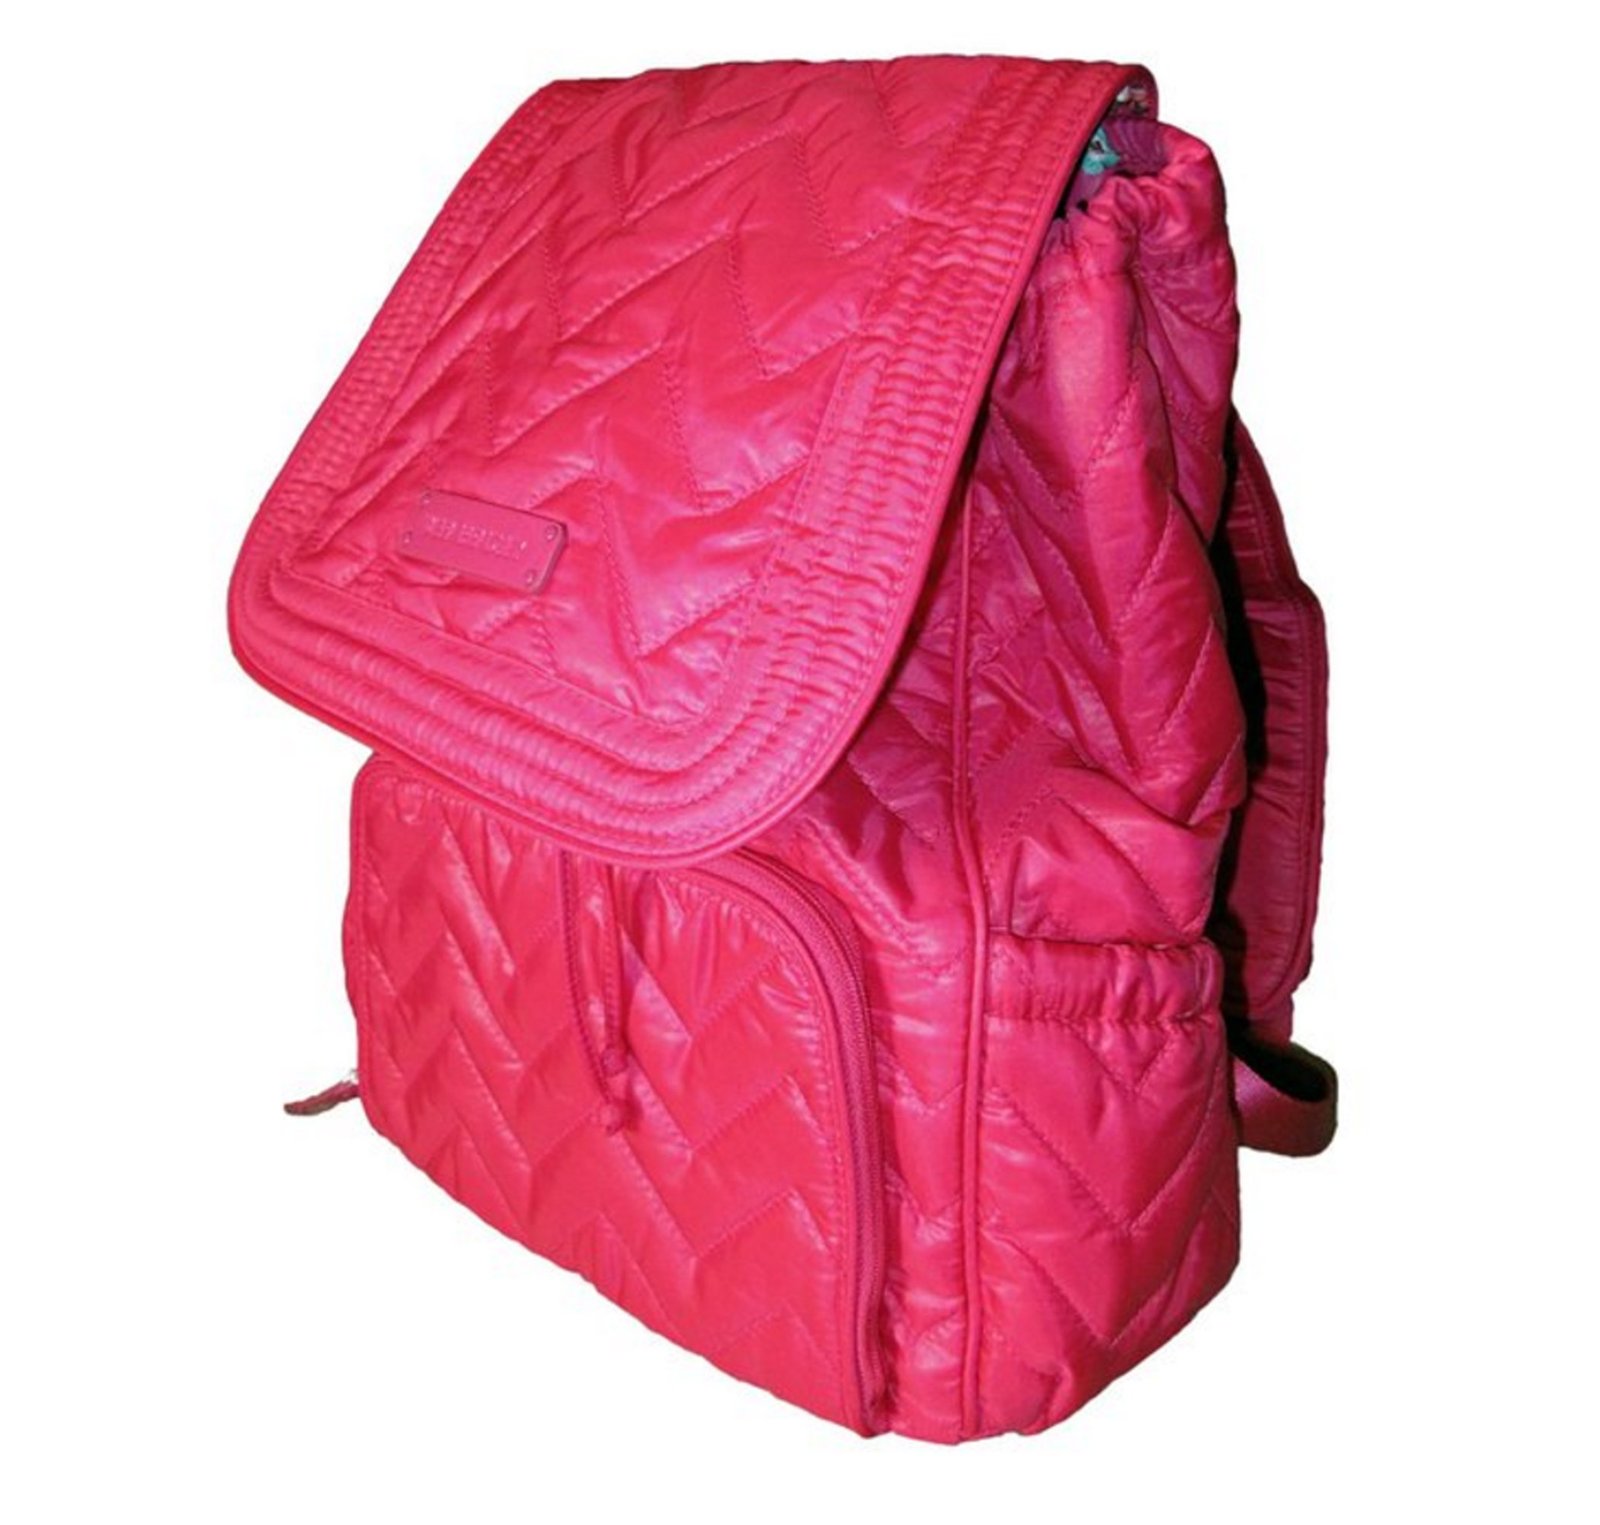 Vera Bradley Puffy Backpack in Fuchsia Pink Nylon - NWT - $64.95